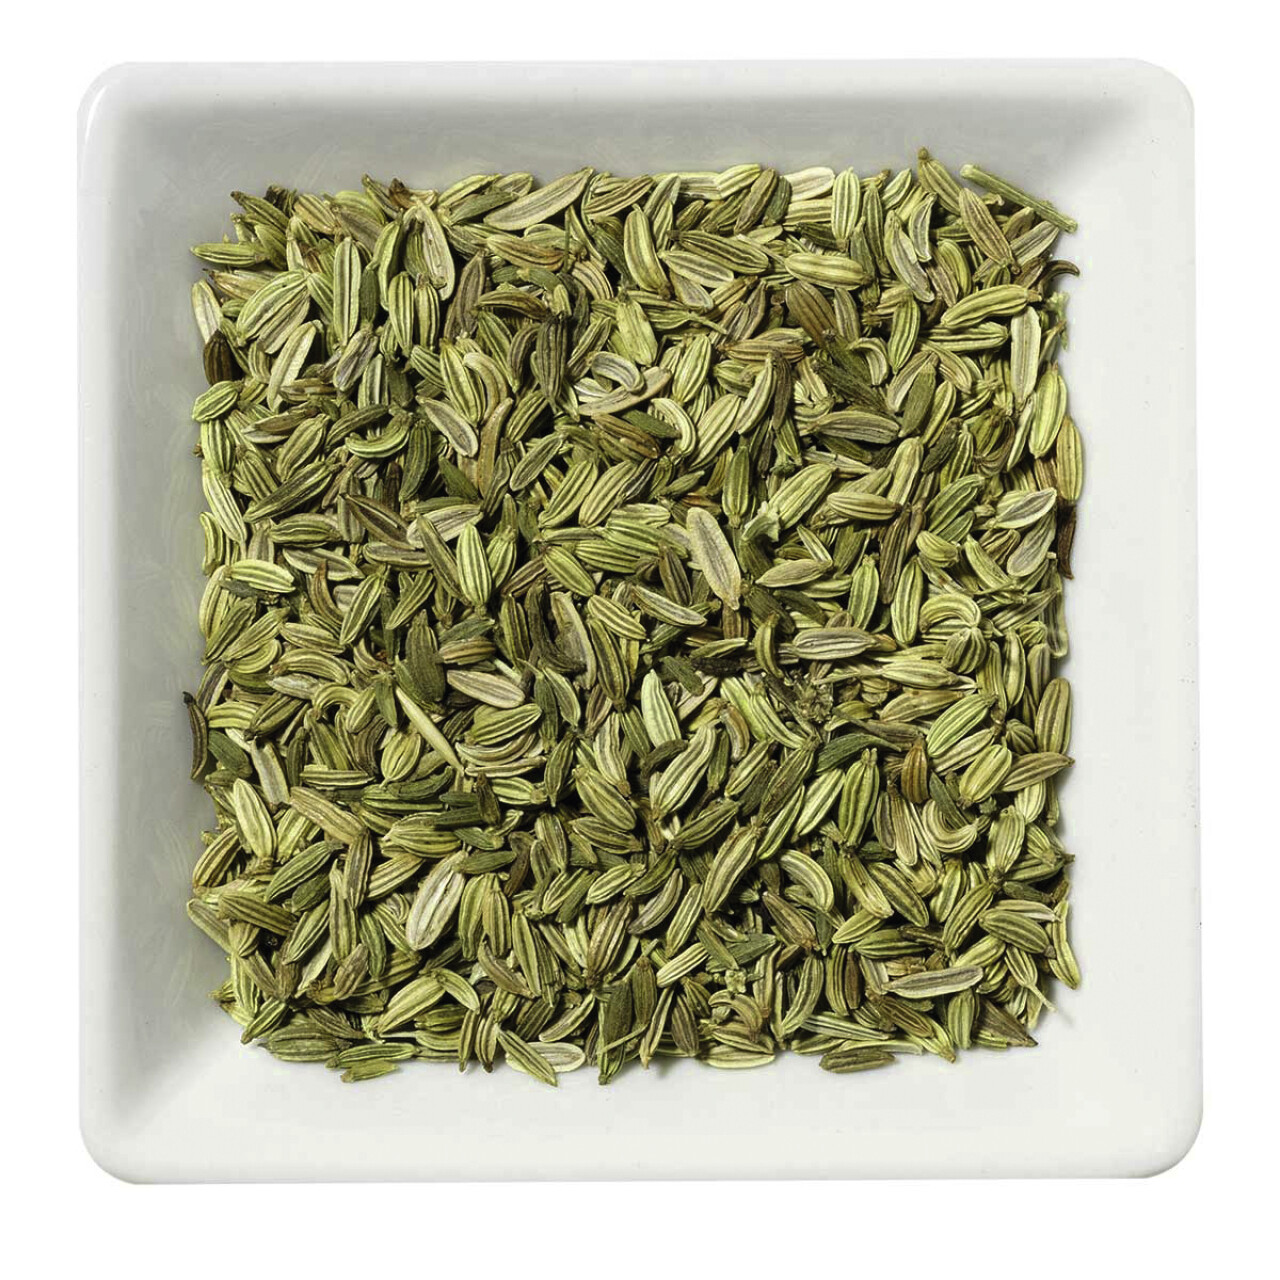 Fennel sweet Organic Tea*, whole seeds